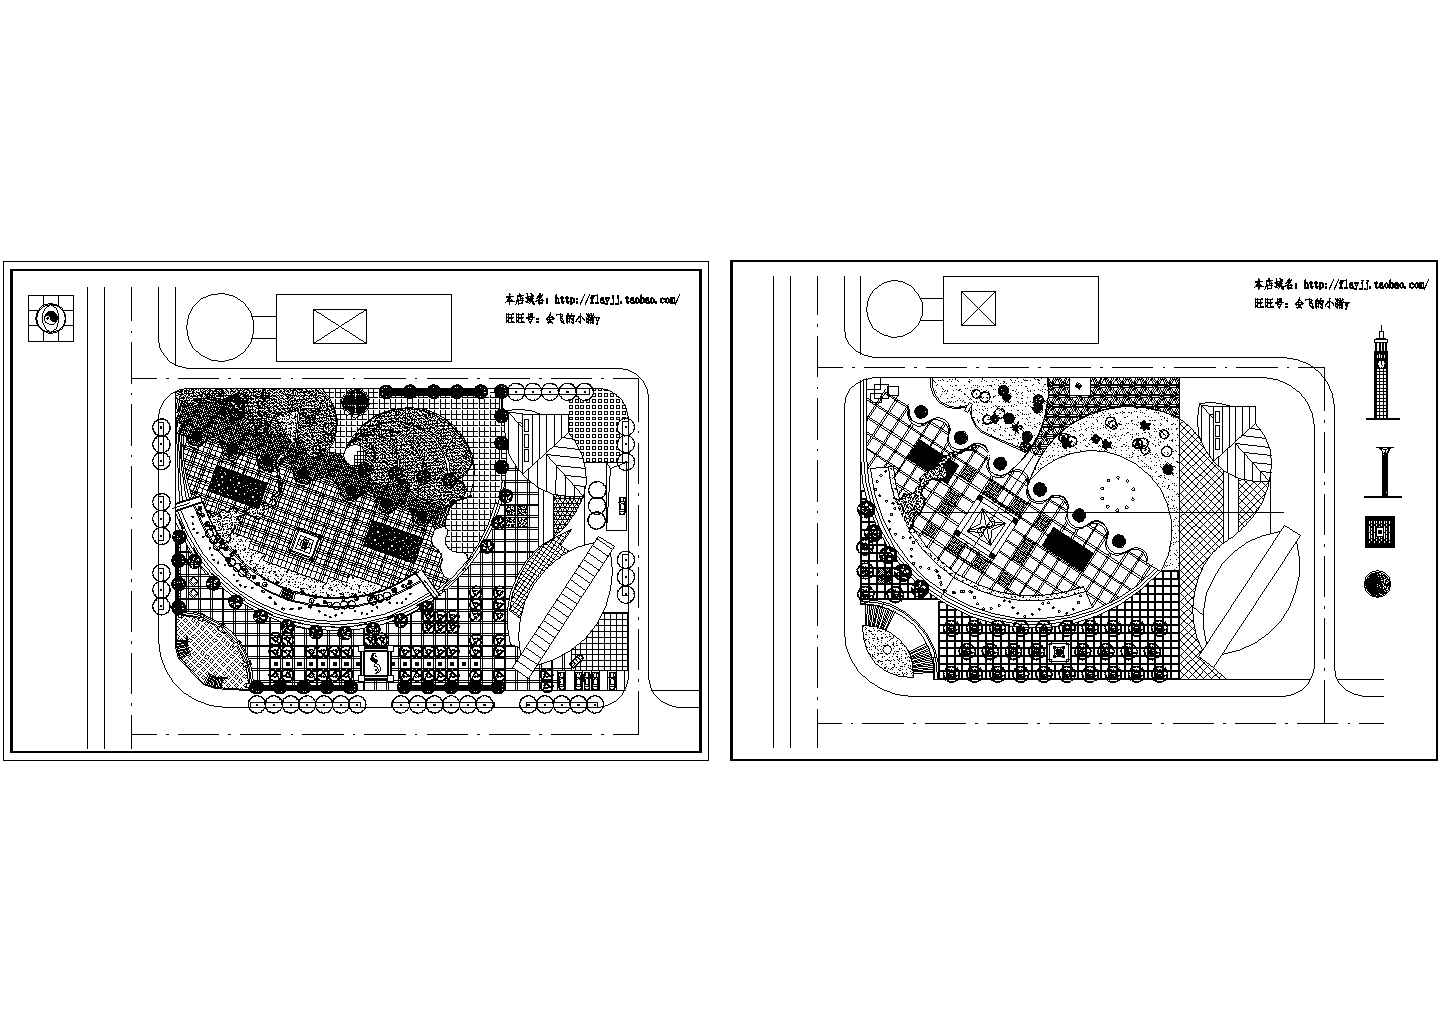 一套文化艺术广场方案规划园林总平面图草图2张